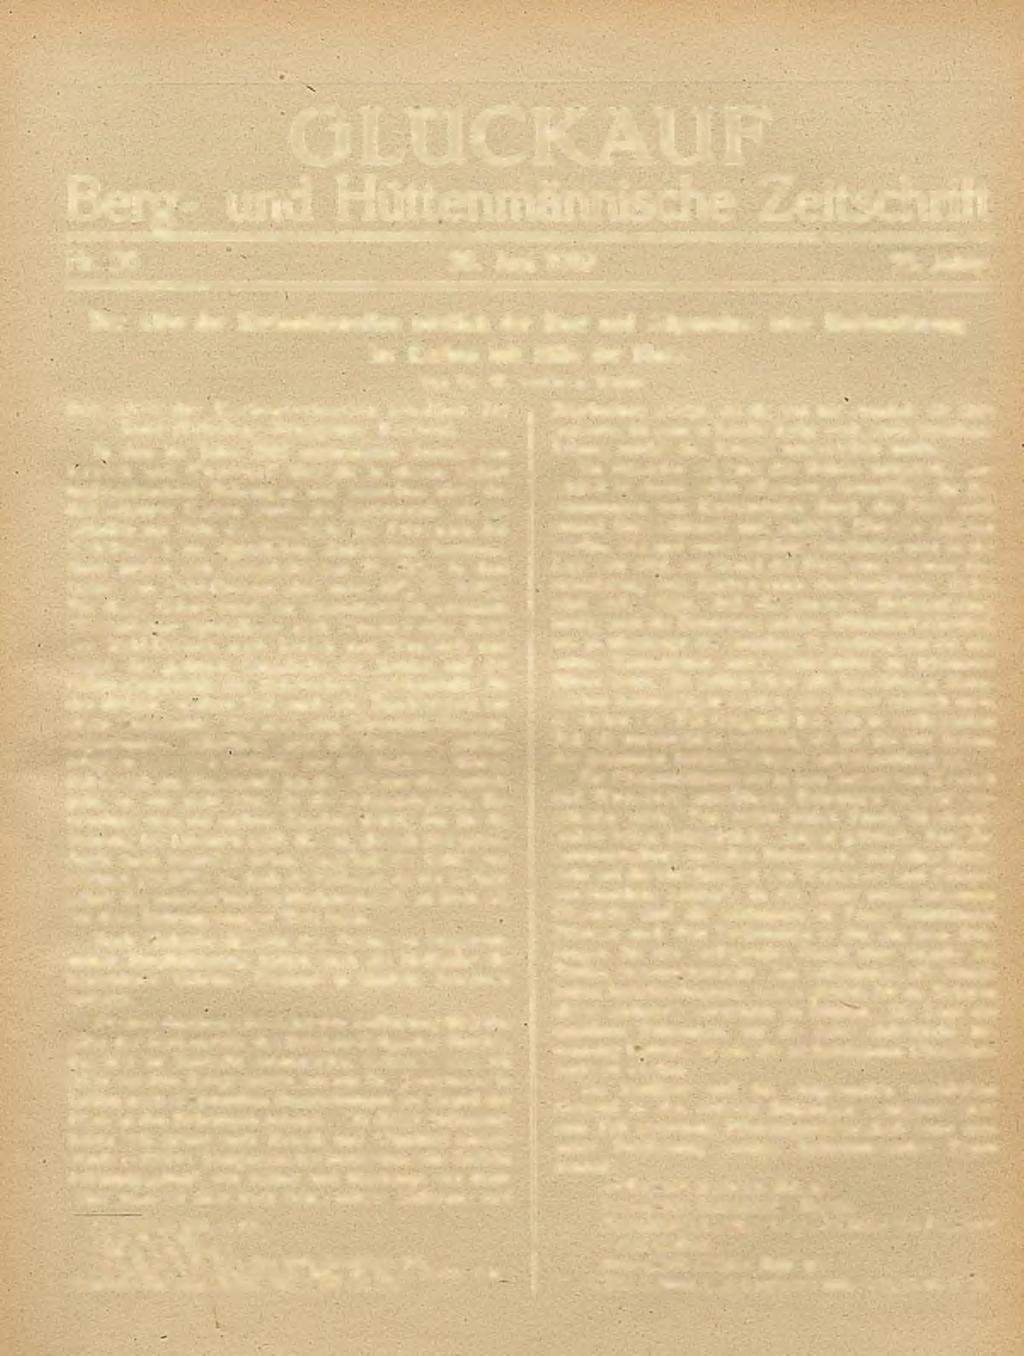 GLÜCKAUF Berg- und Hüttenmännische Zeitschrift Nr. 2 6 28. Juni 1919 55. Jahrg.